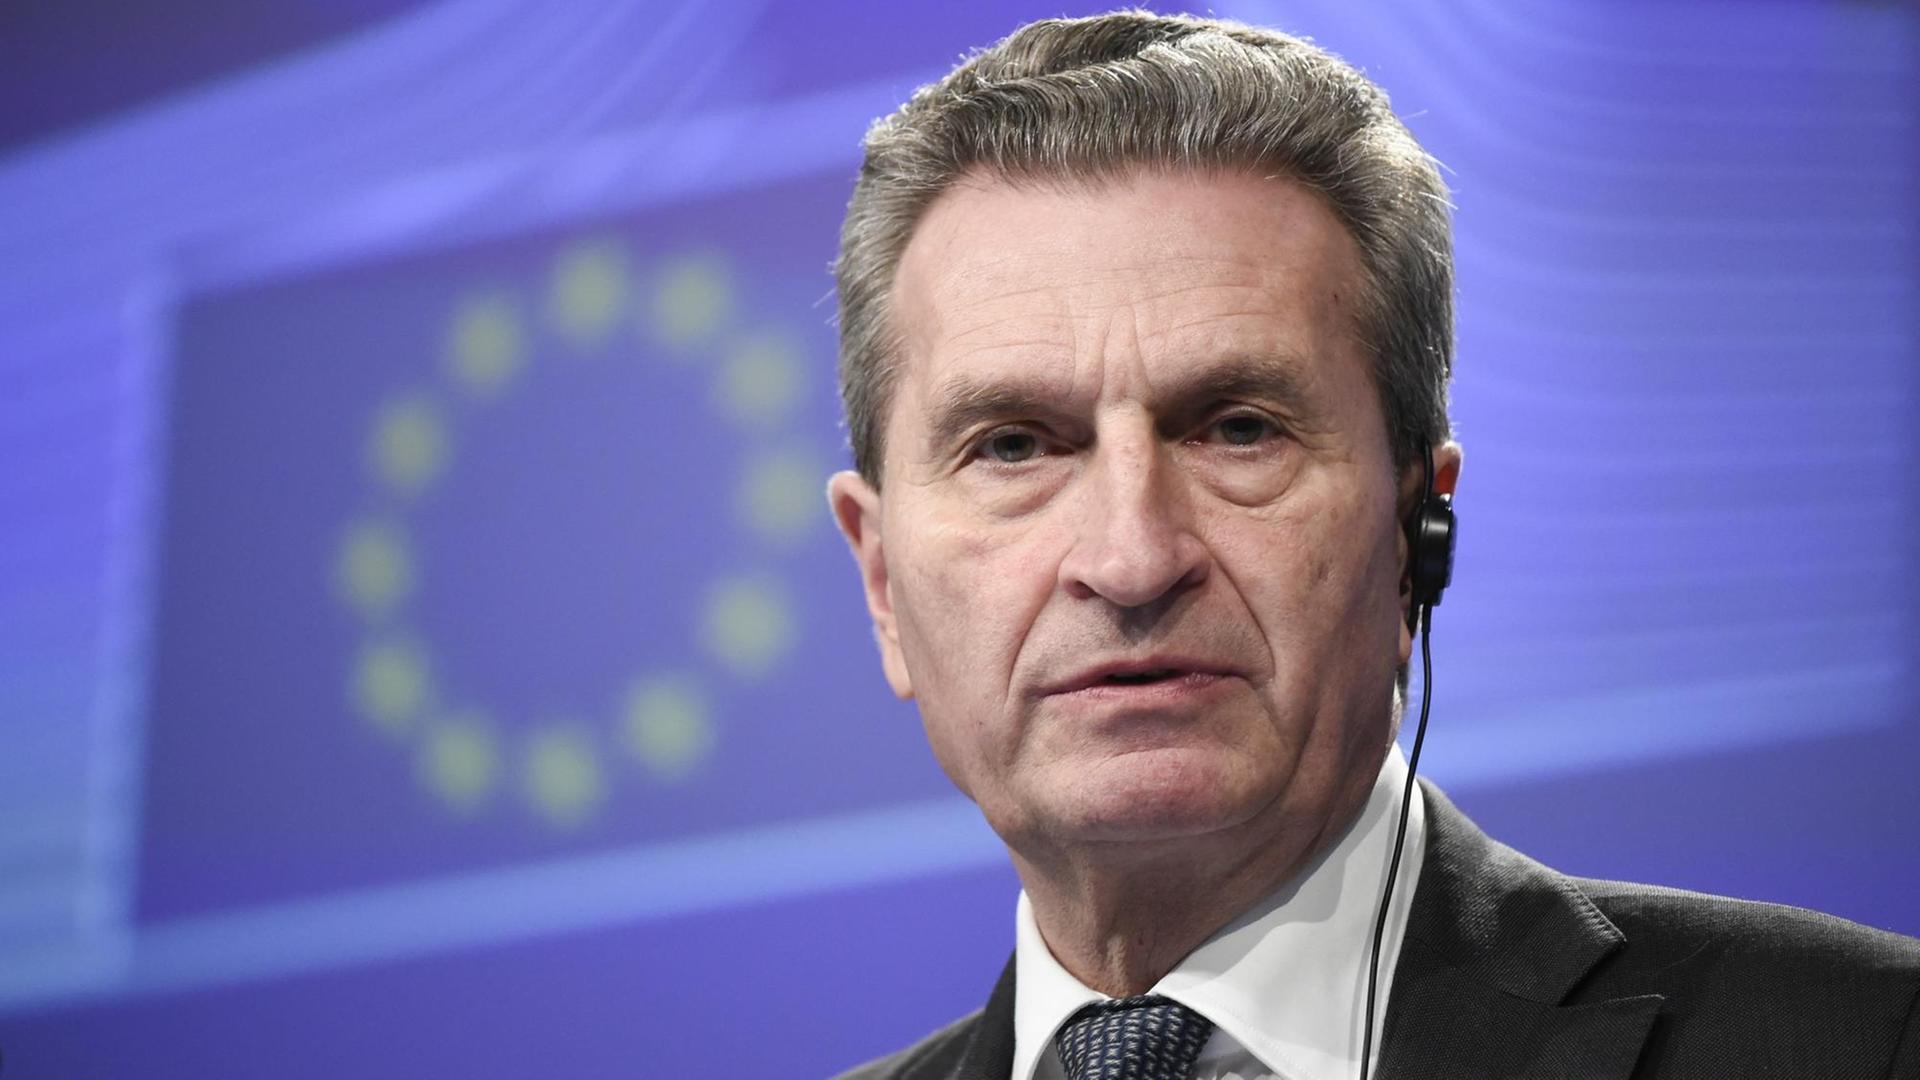 Oettinger steht vor einer blauen Wand mit den EU-Sternen.